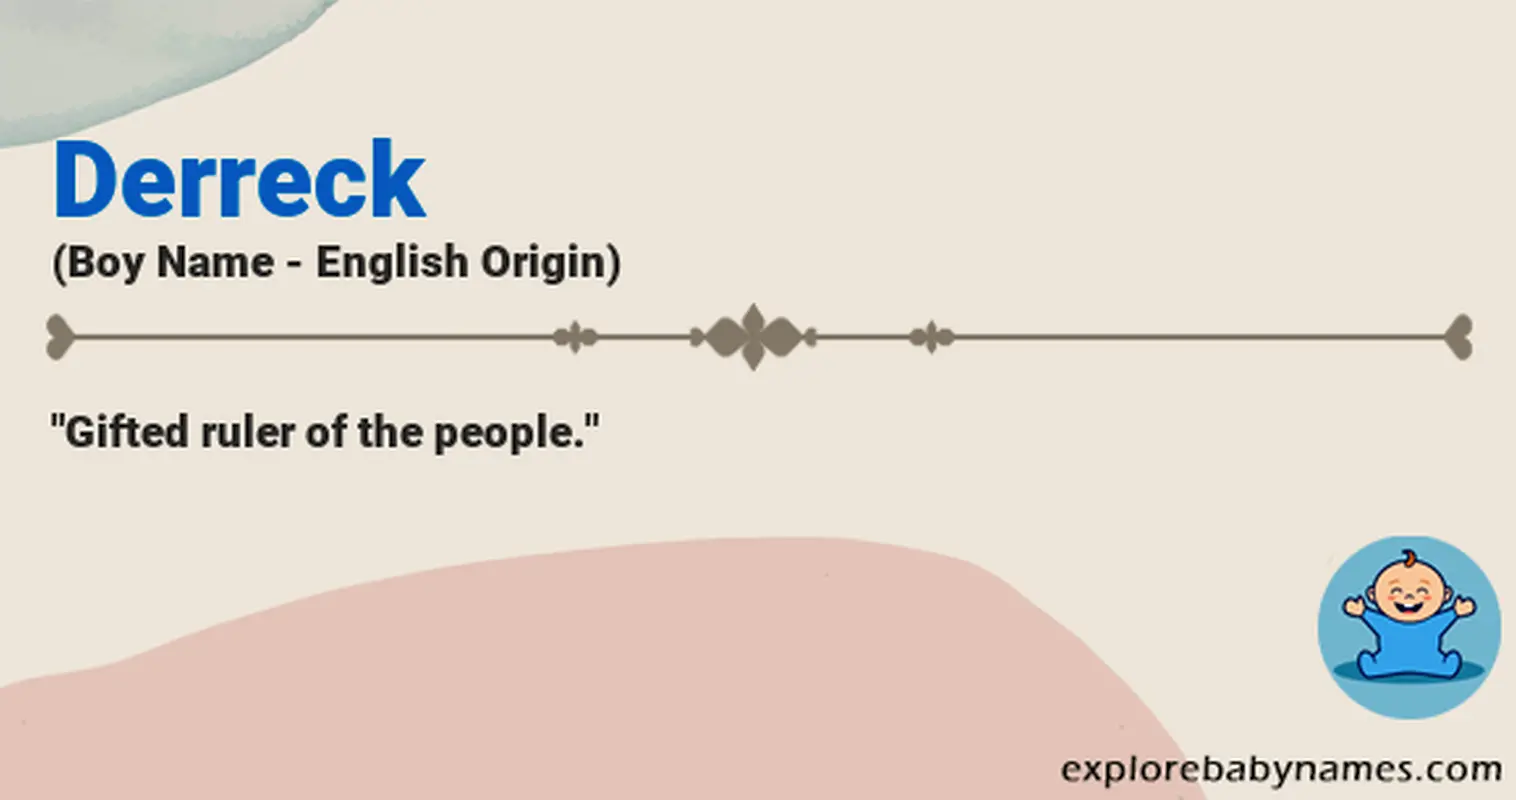 Meaning of Derreck